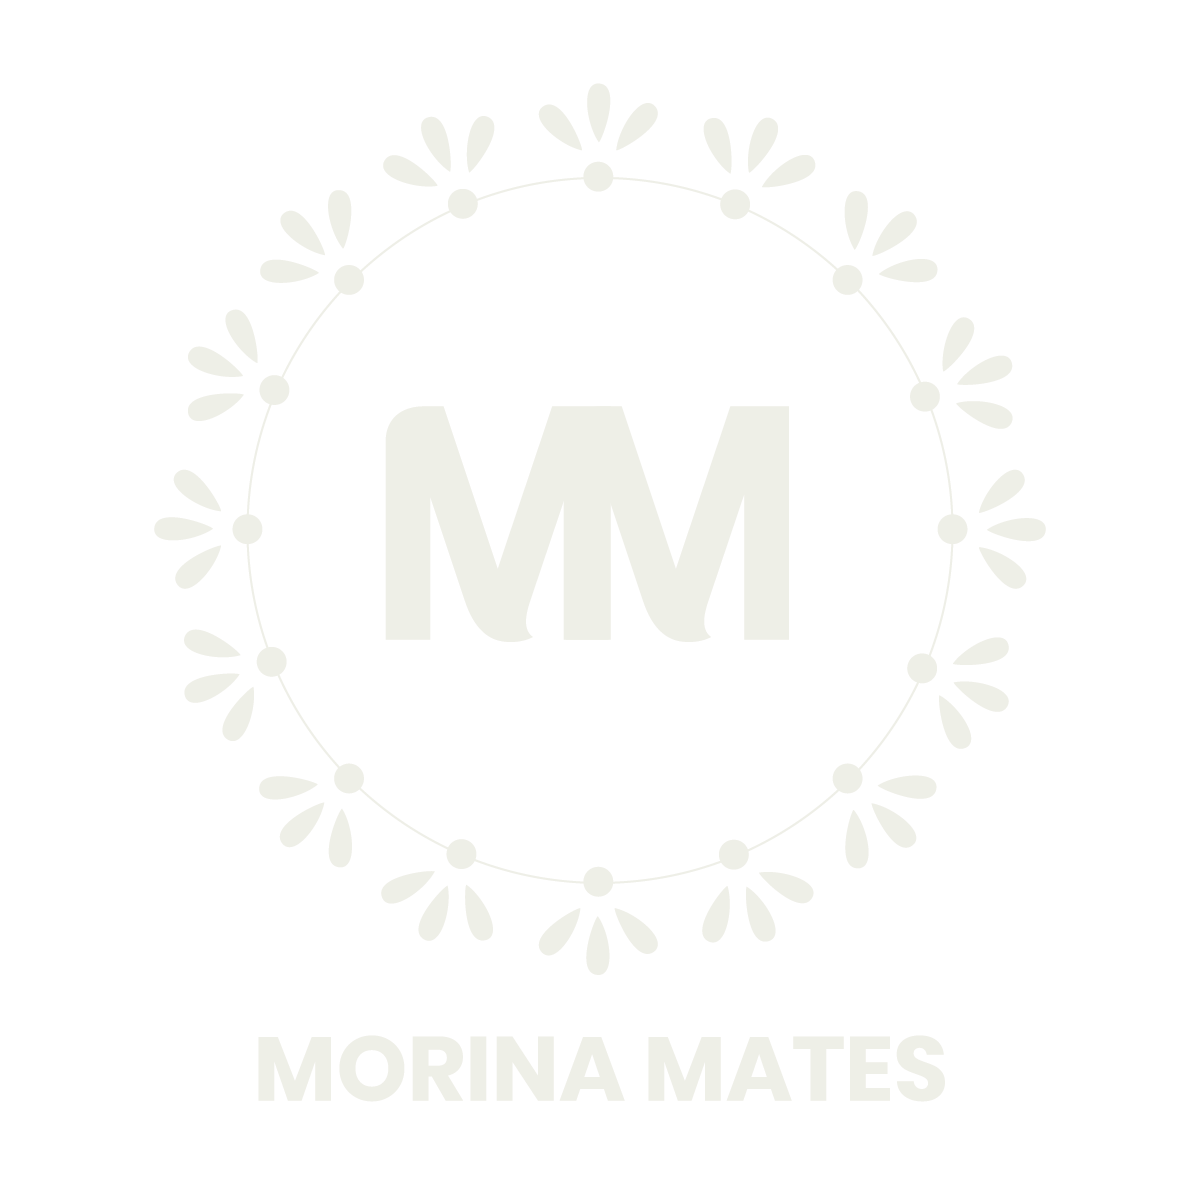 morinamates.com-logo